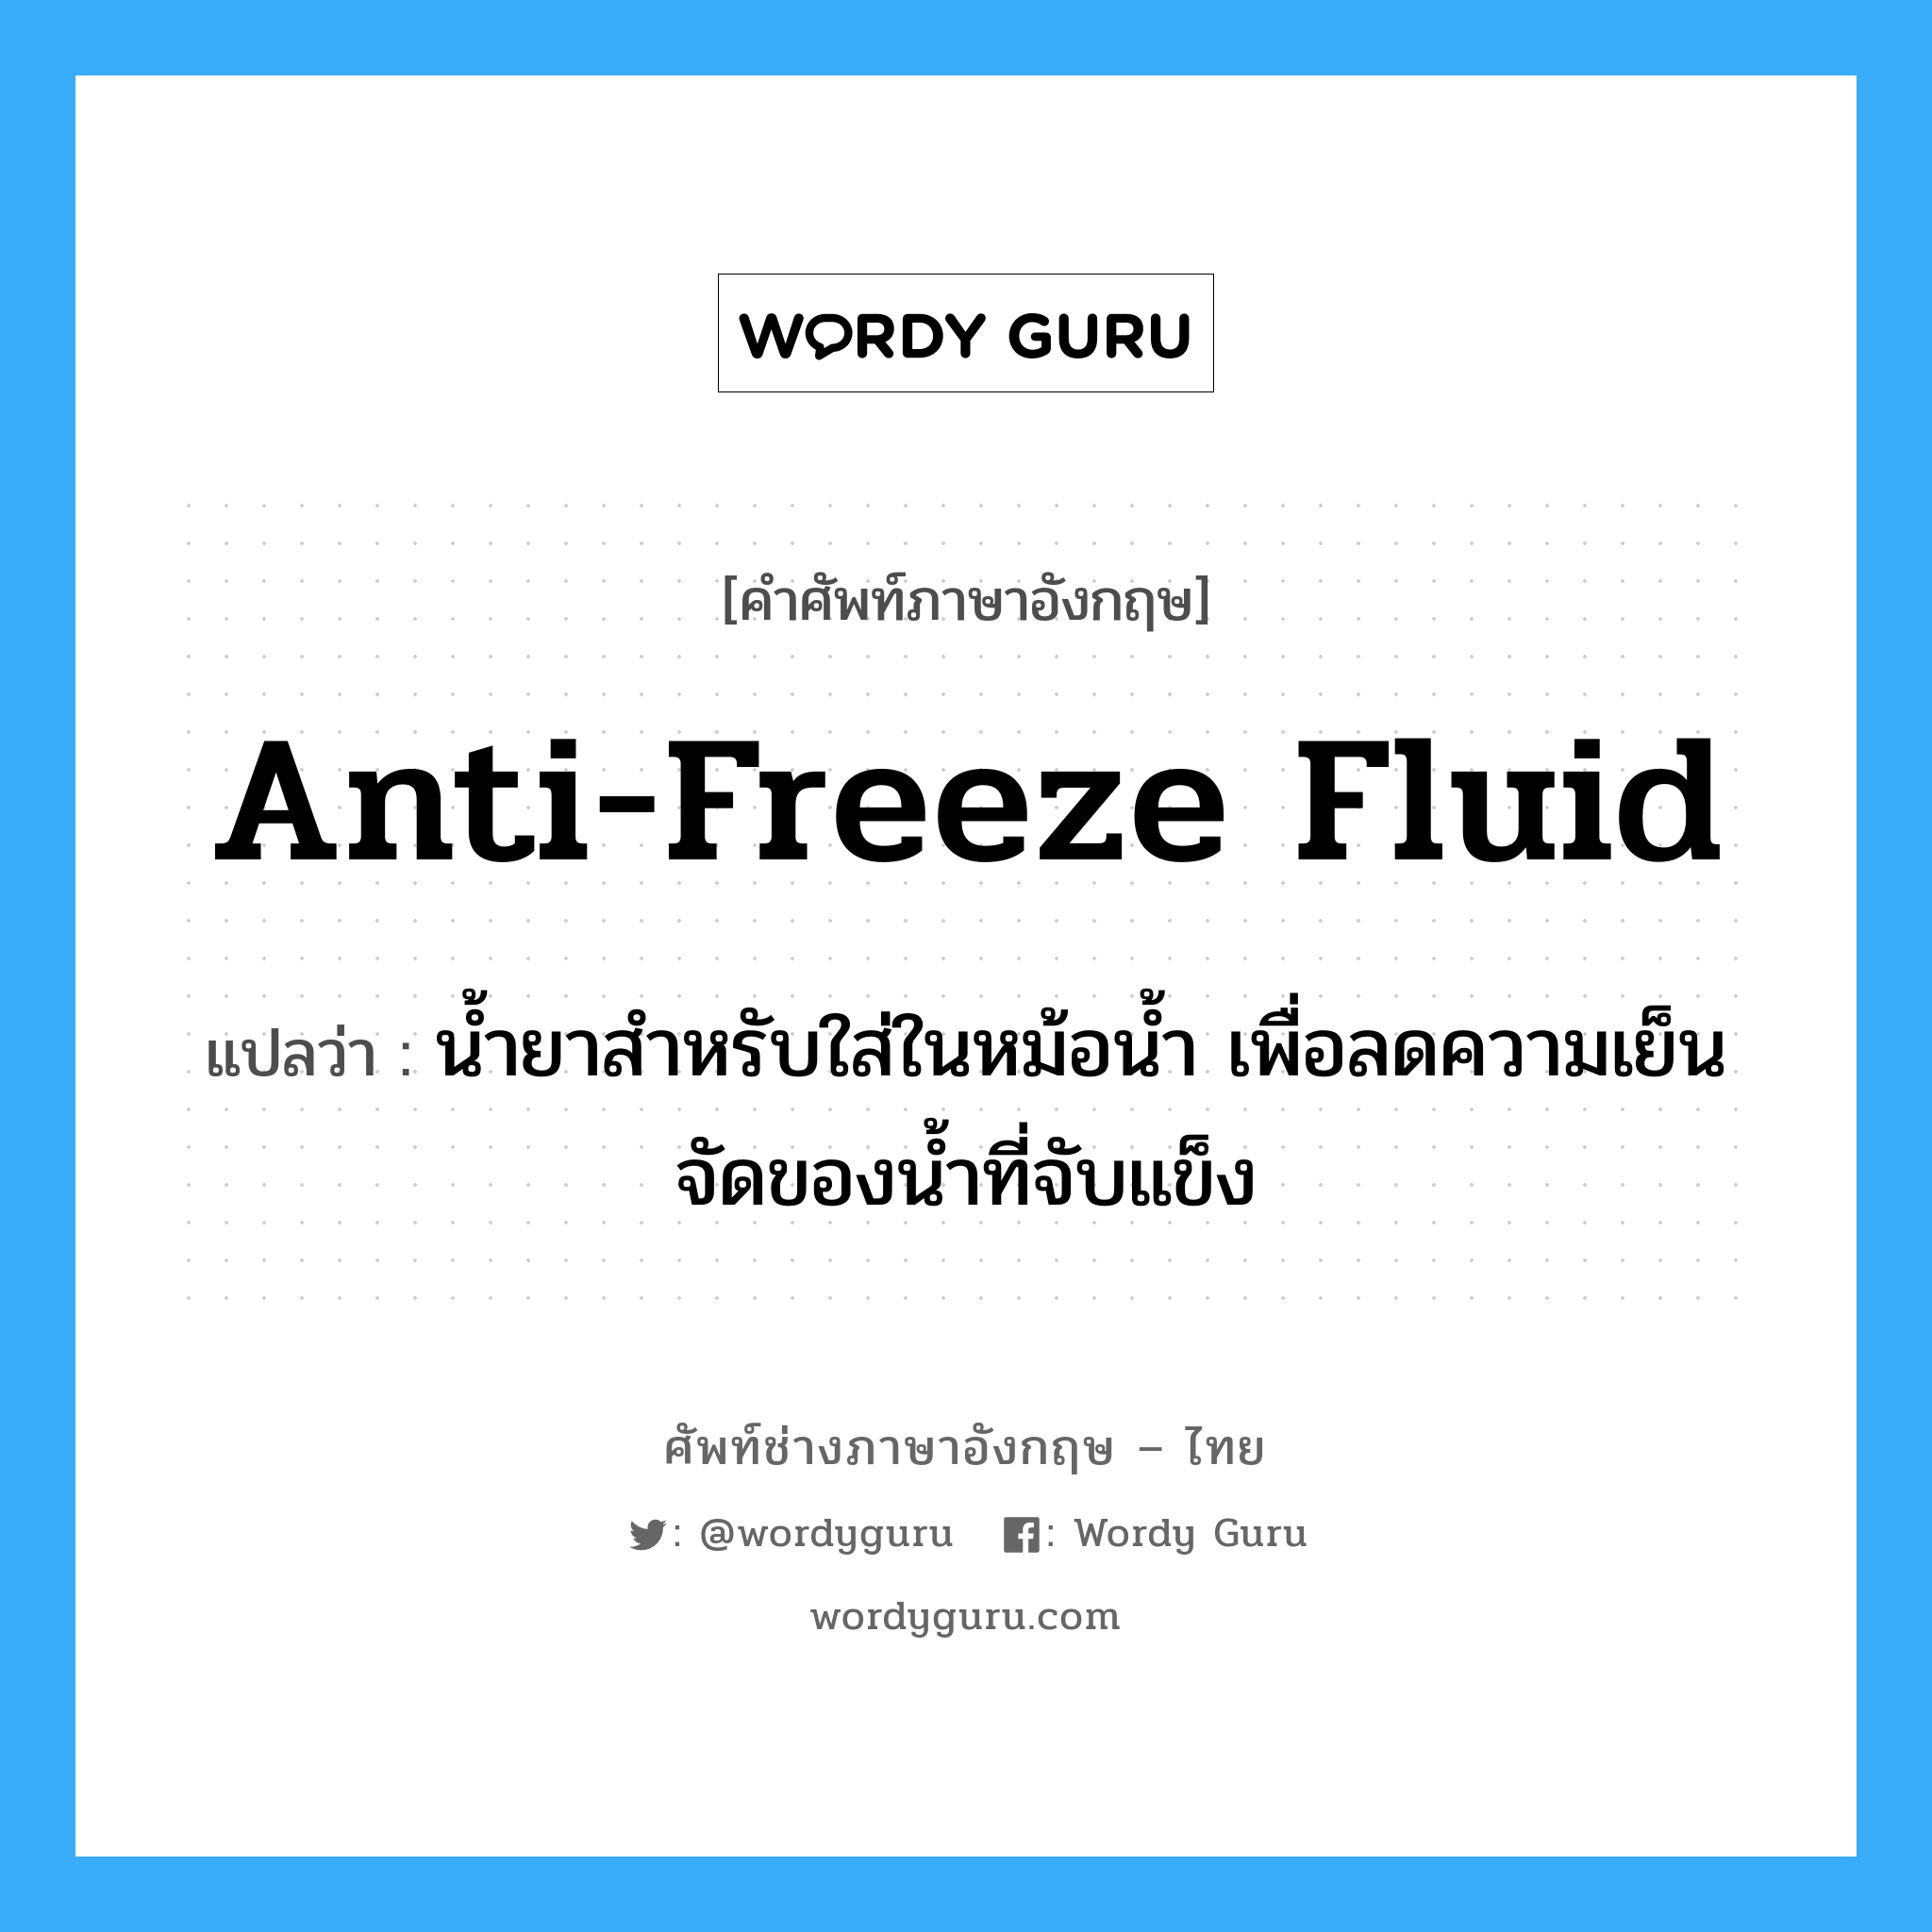 anti-freeze fluid แปลว่า?, คำศัพท์ช่างภาษาอังกฤษ - ไทย anti-freeze fluid คำศัพท์ภาษาอังกฤษ anti-freeze fluid แปลว่า น้ำยาสำหรับใส่ในหม้อน้ำ เพื่อลดความเย็นจัดของน้ำที่จับแข็ง